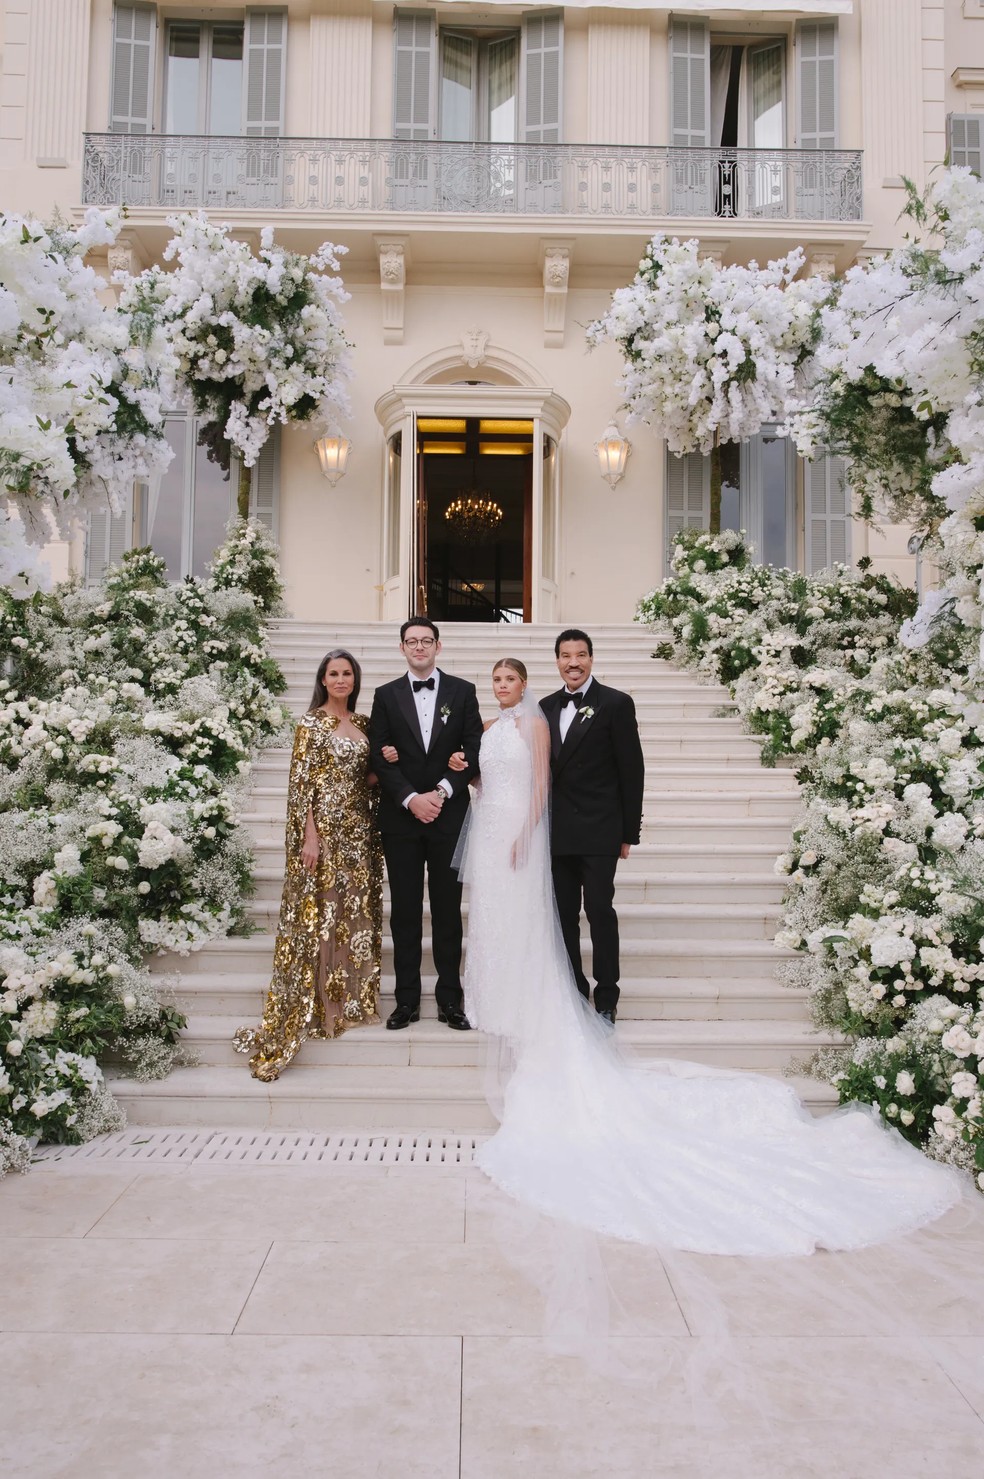 Os recém-casados com os pais de Sofia - Lionel Richie e Diane Alexander. — Foto: Norman & Blake